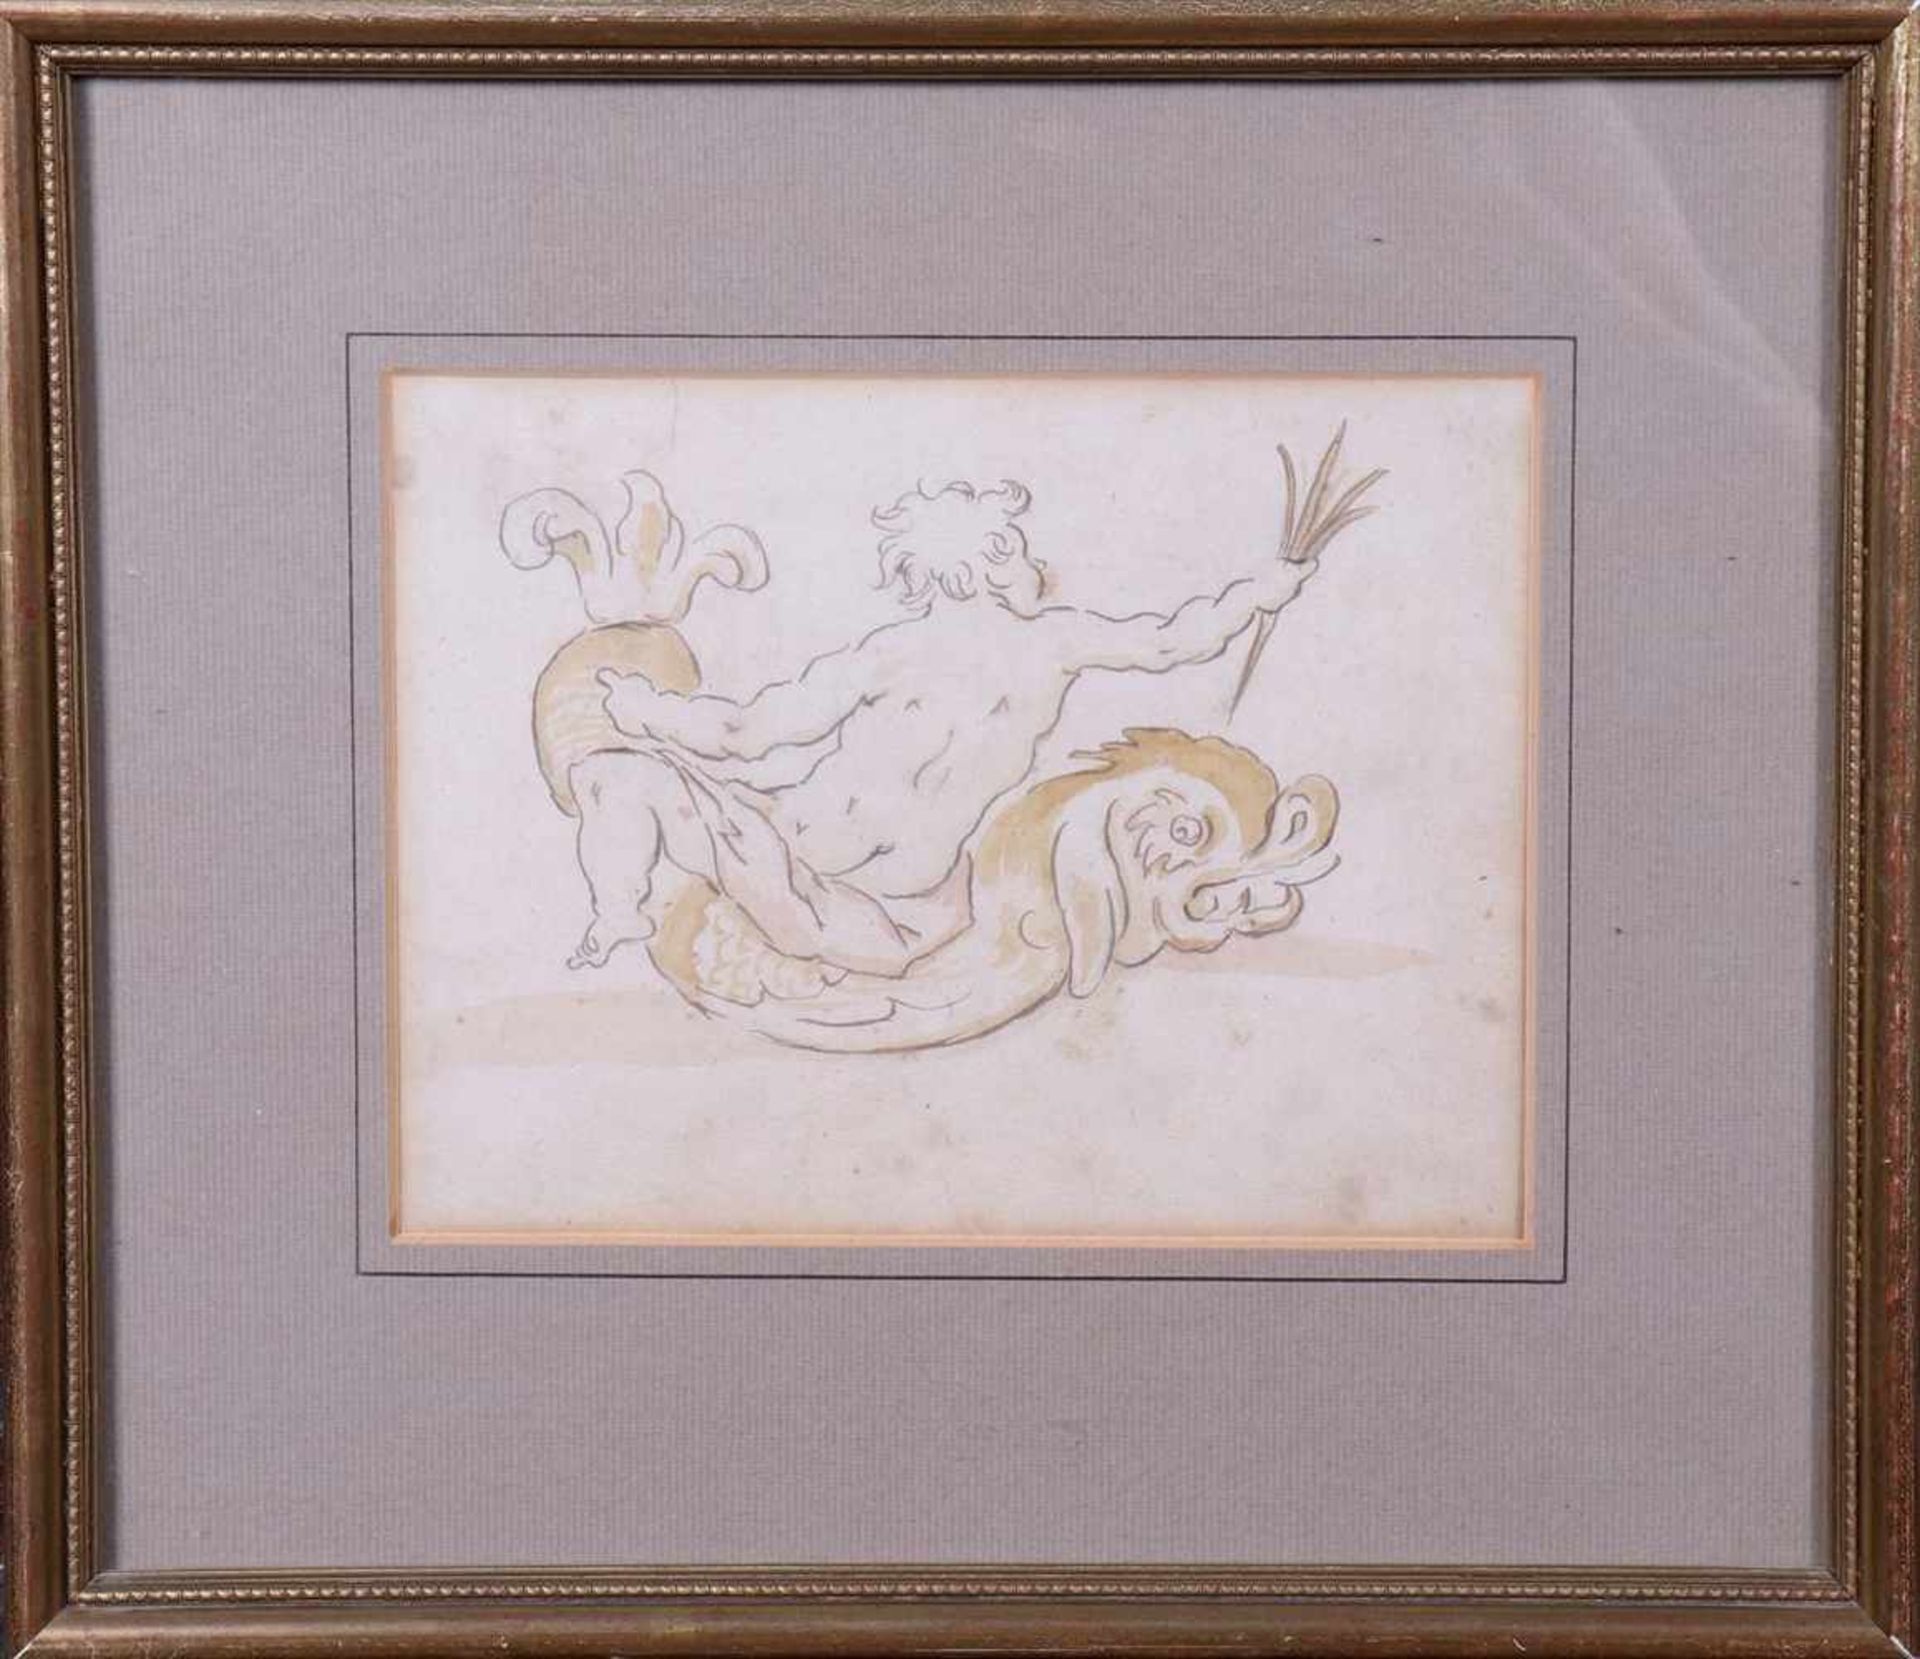 Putto auf Delfin,Barocke Entwurfsskizze, wohl um 1800, Bleistift und Tusche, verso mit Bleistift